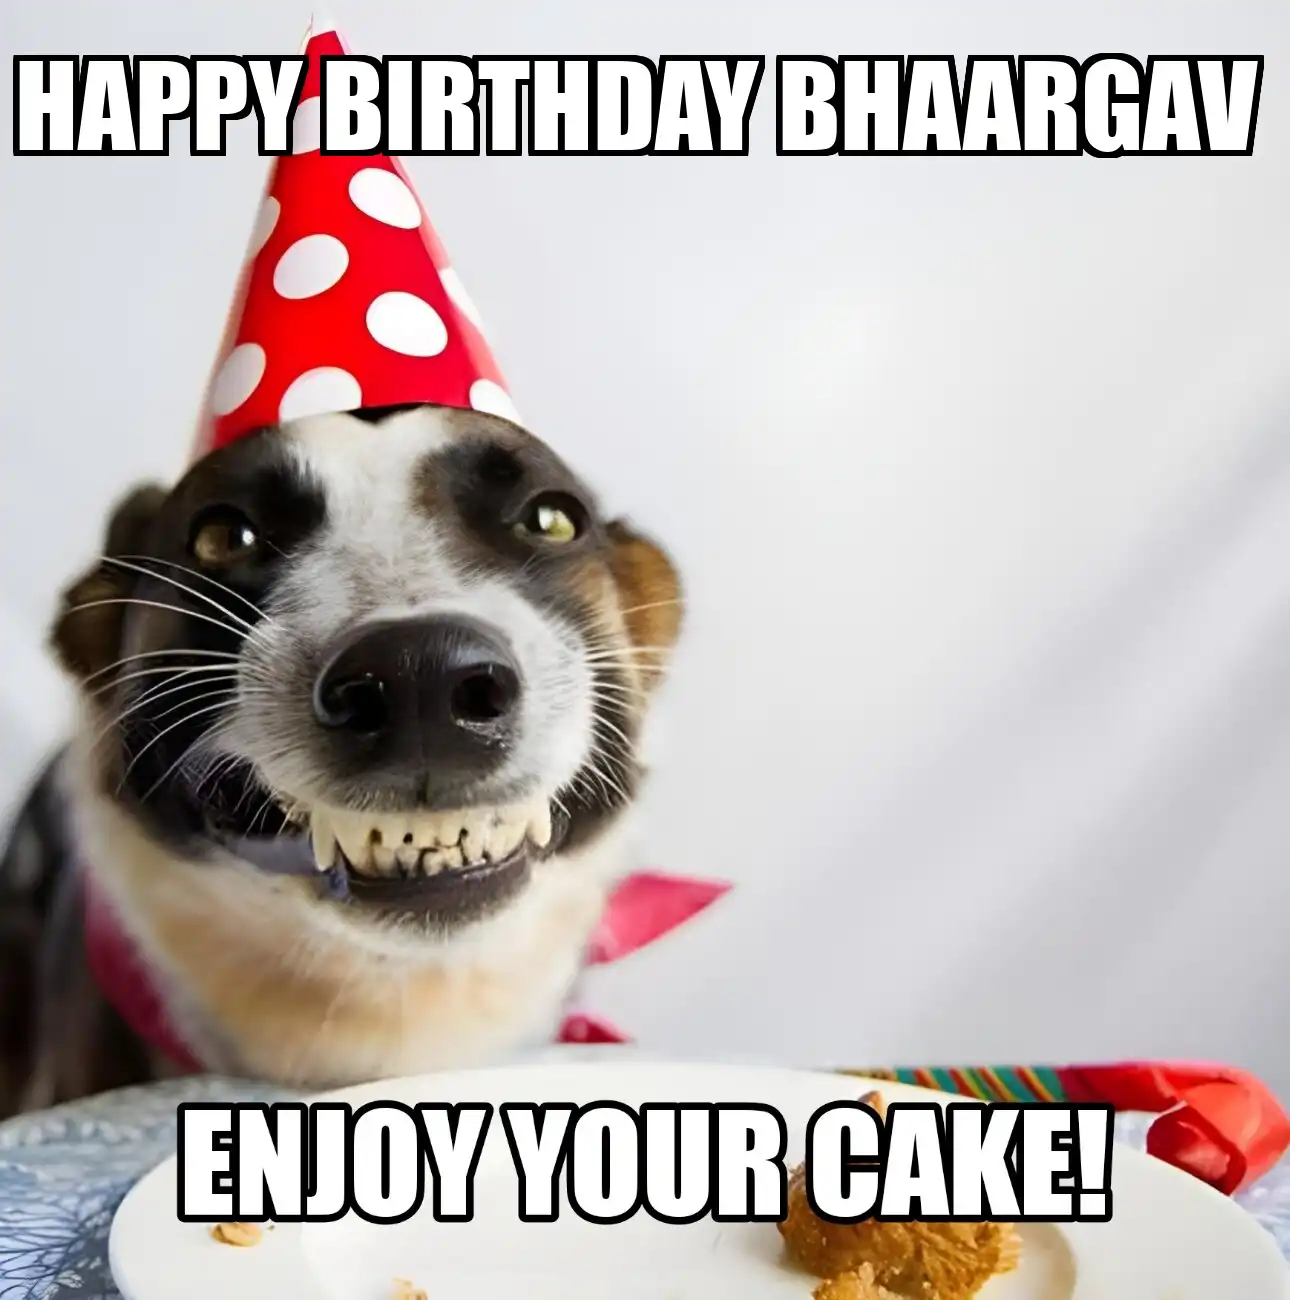 Happy Birthday Bhaargav Enjoy Your Cake Dog Meme